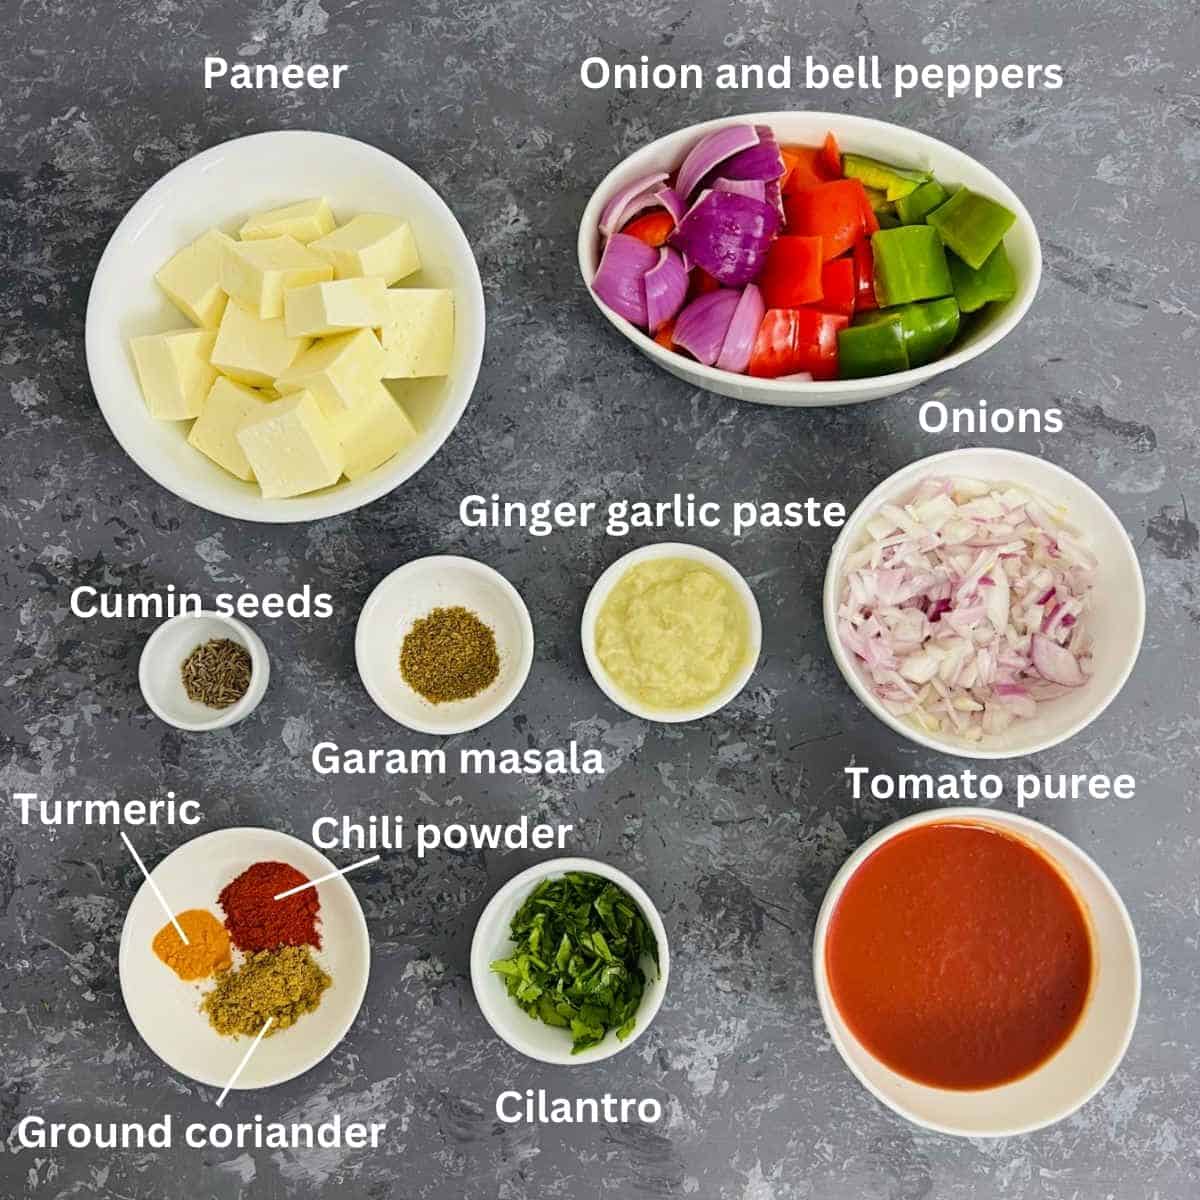 paneer sabzi ingredients with labels.